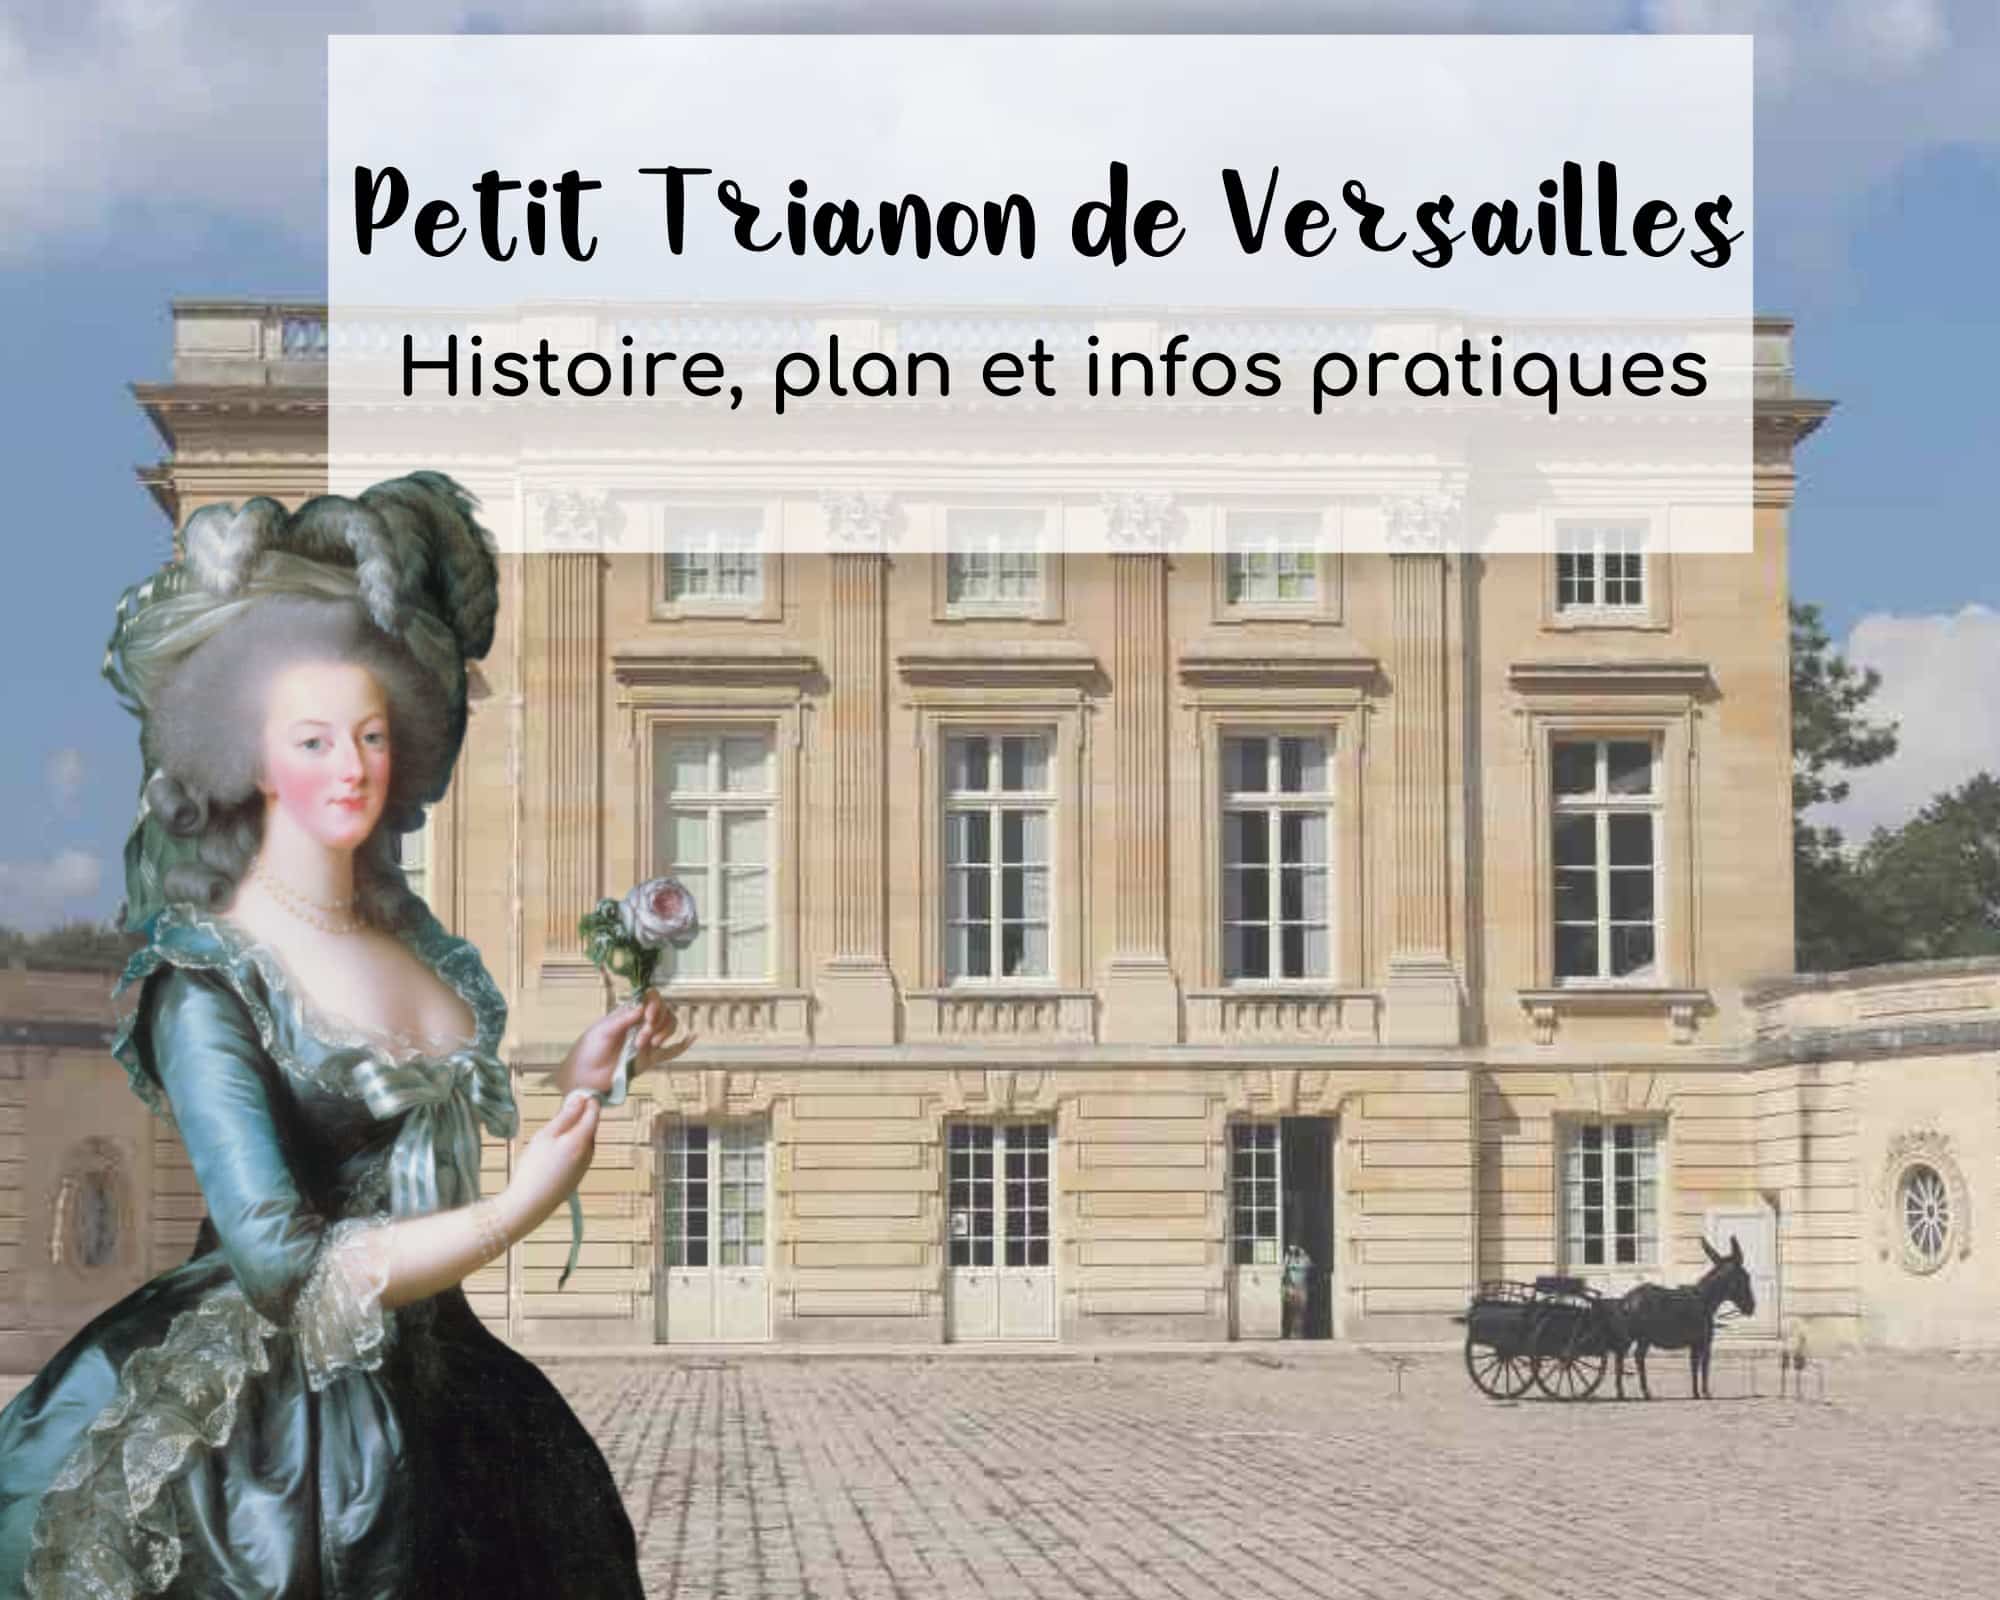 Petit Trianon de Versailles avec une image détourée de Marie-Antoinette tenant une rose à la main.